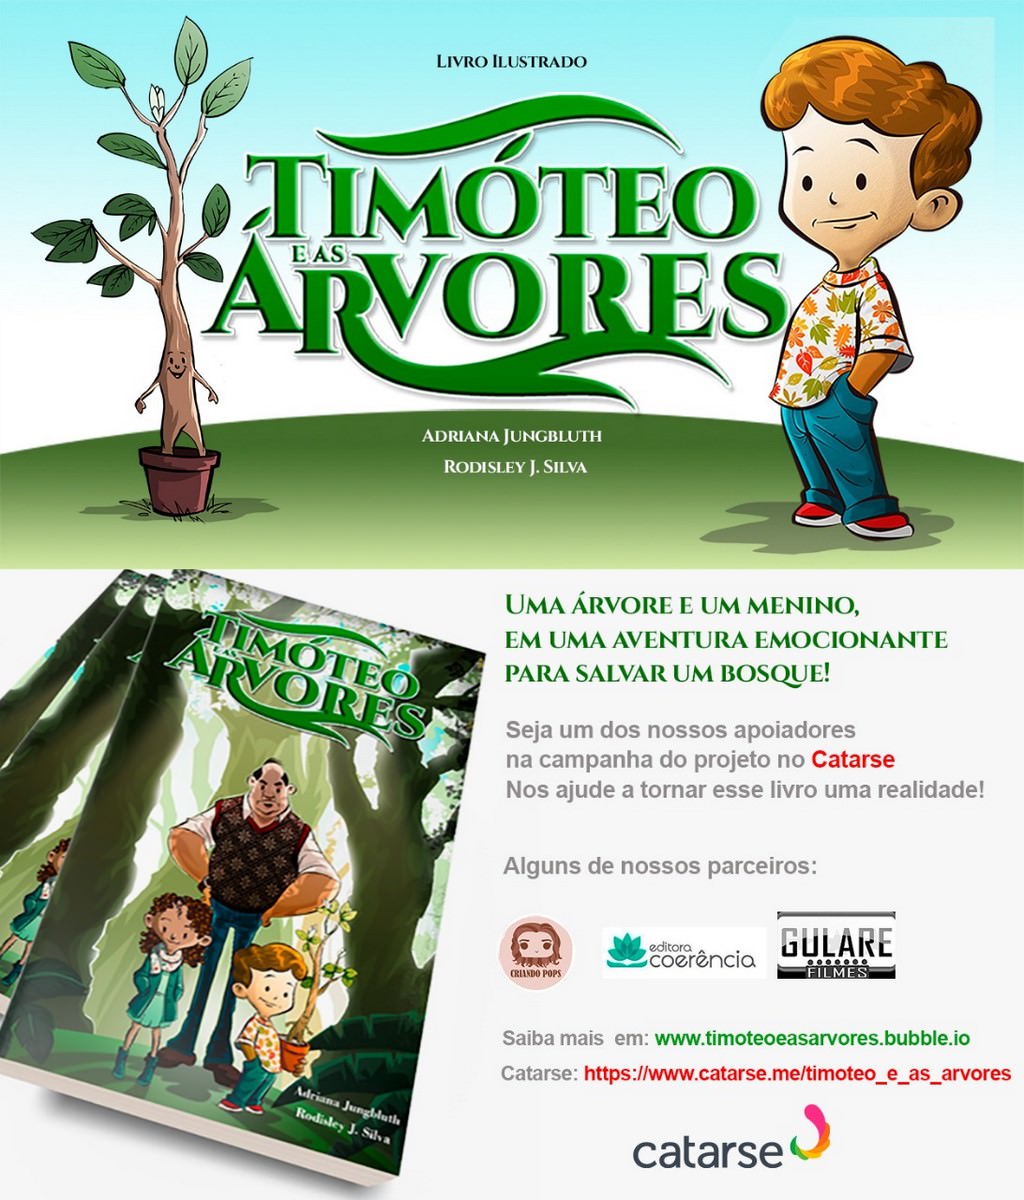 Livro “Timóteo e as Árvores” de Adriana Jungbluth e Rodisley J. Silva, banner. Divulgação.